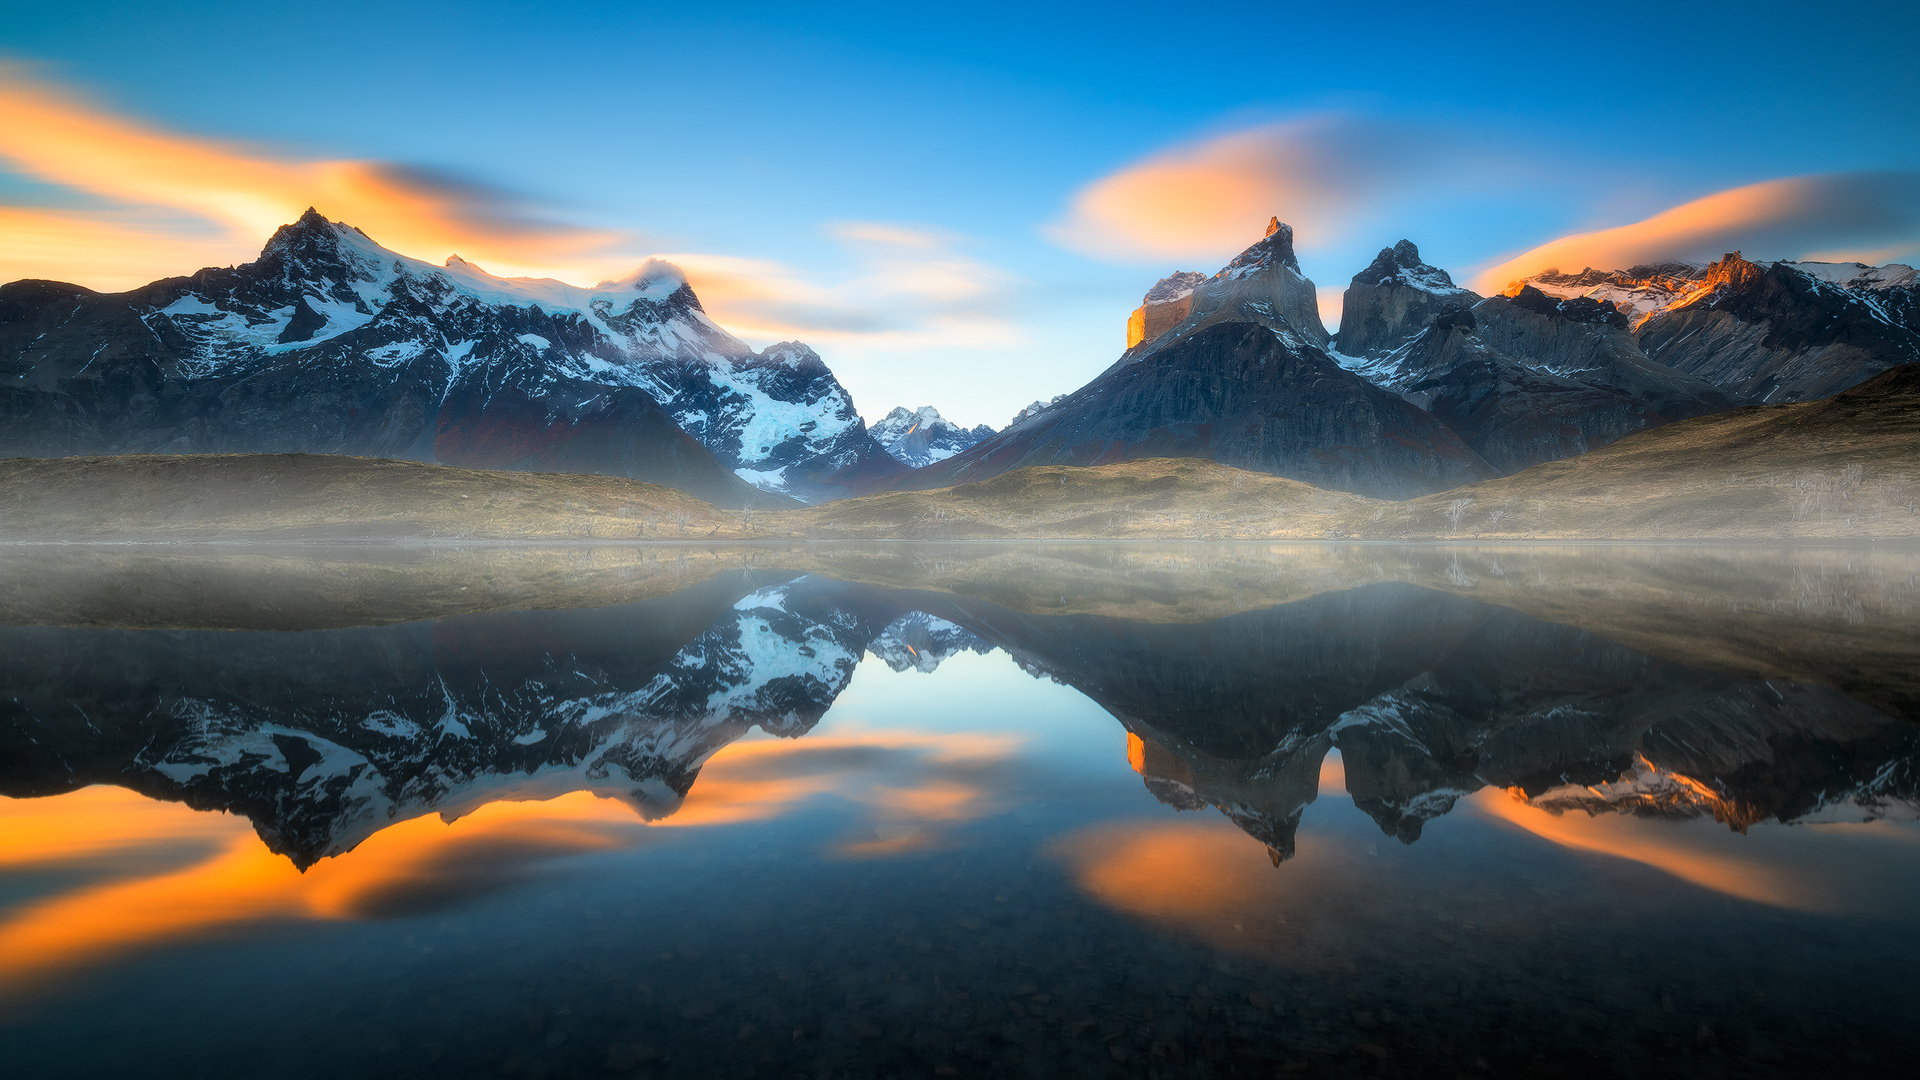 Chile Fog Lake Landscape Mountain Reflection Sunset 1920x1080